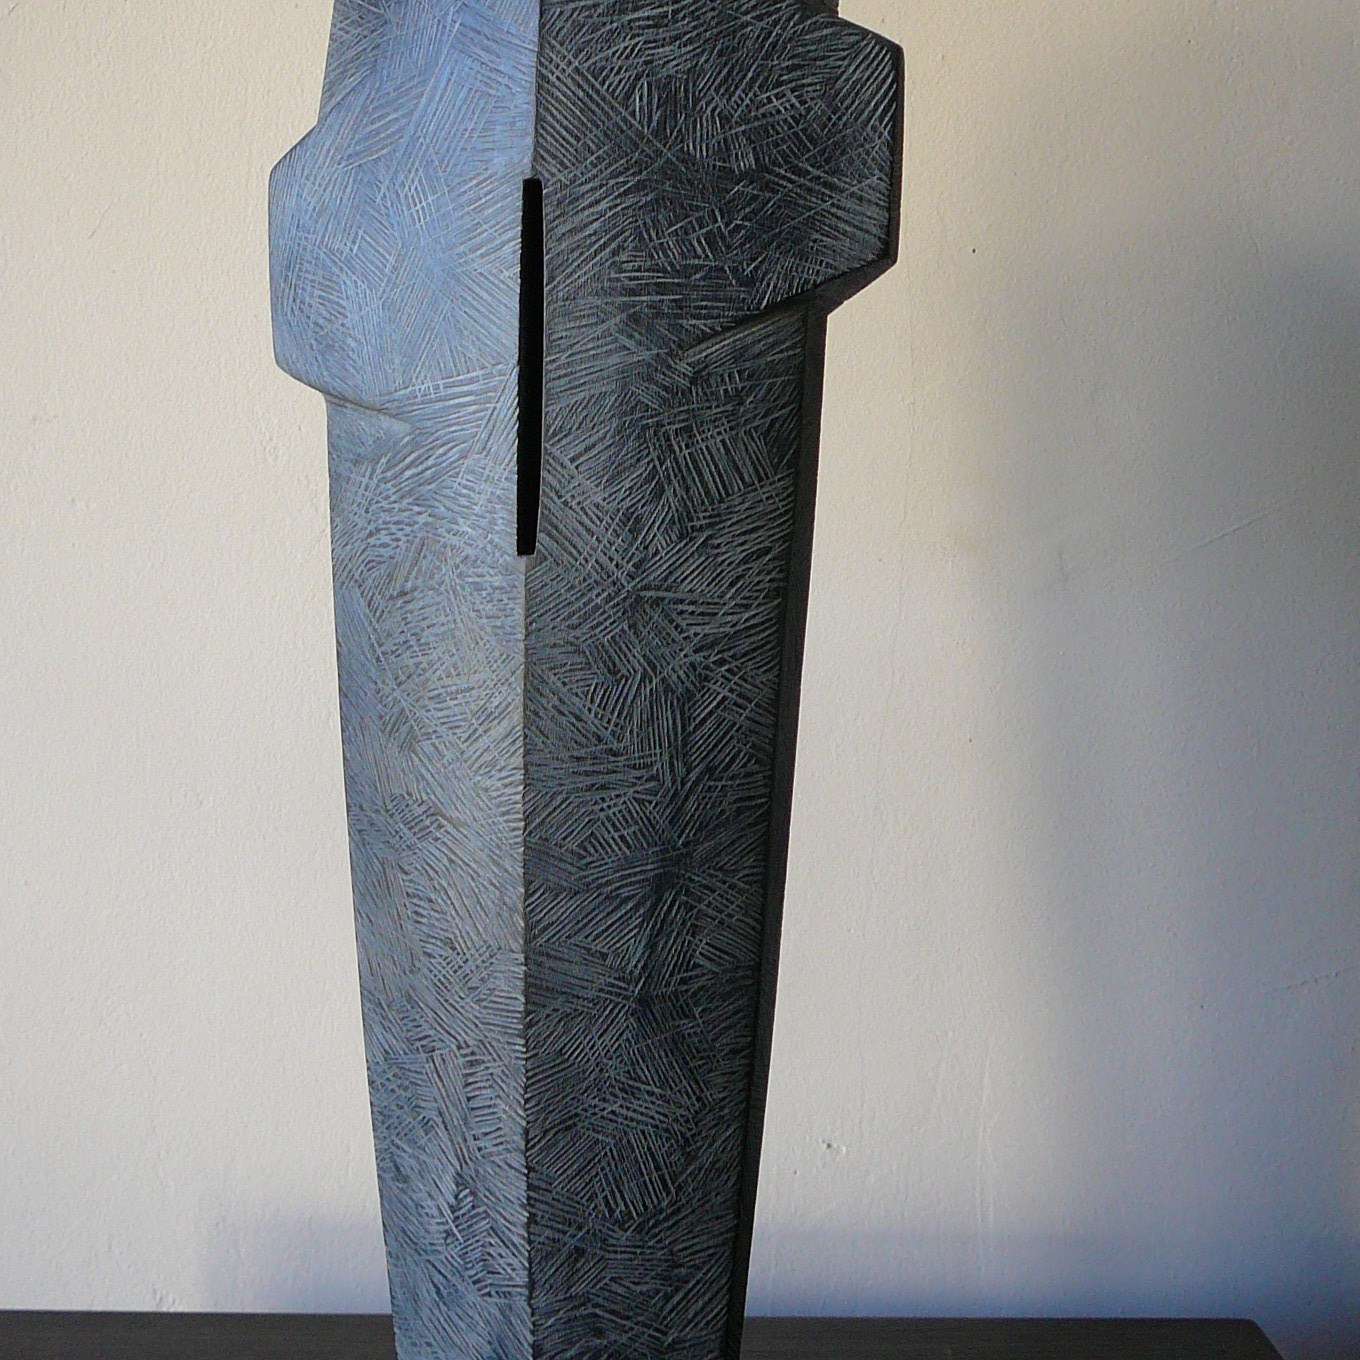 Torse I, Tilleul, Ht 37 cm, 2019